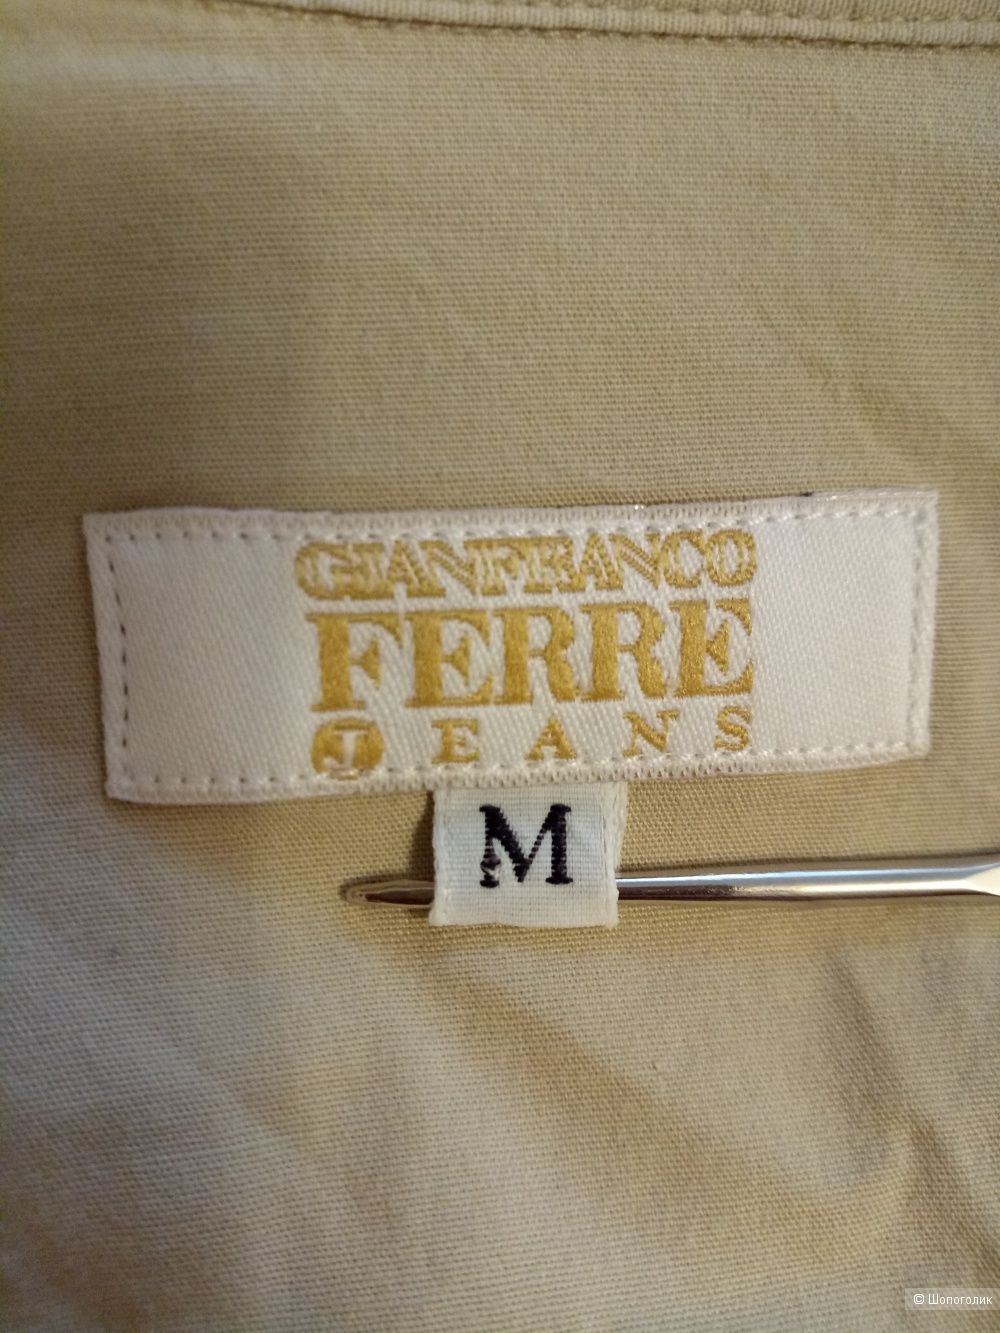 Рубашка GIANFRANCO FERRE jeans , размер 44-46 рос